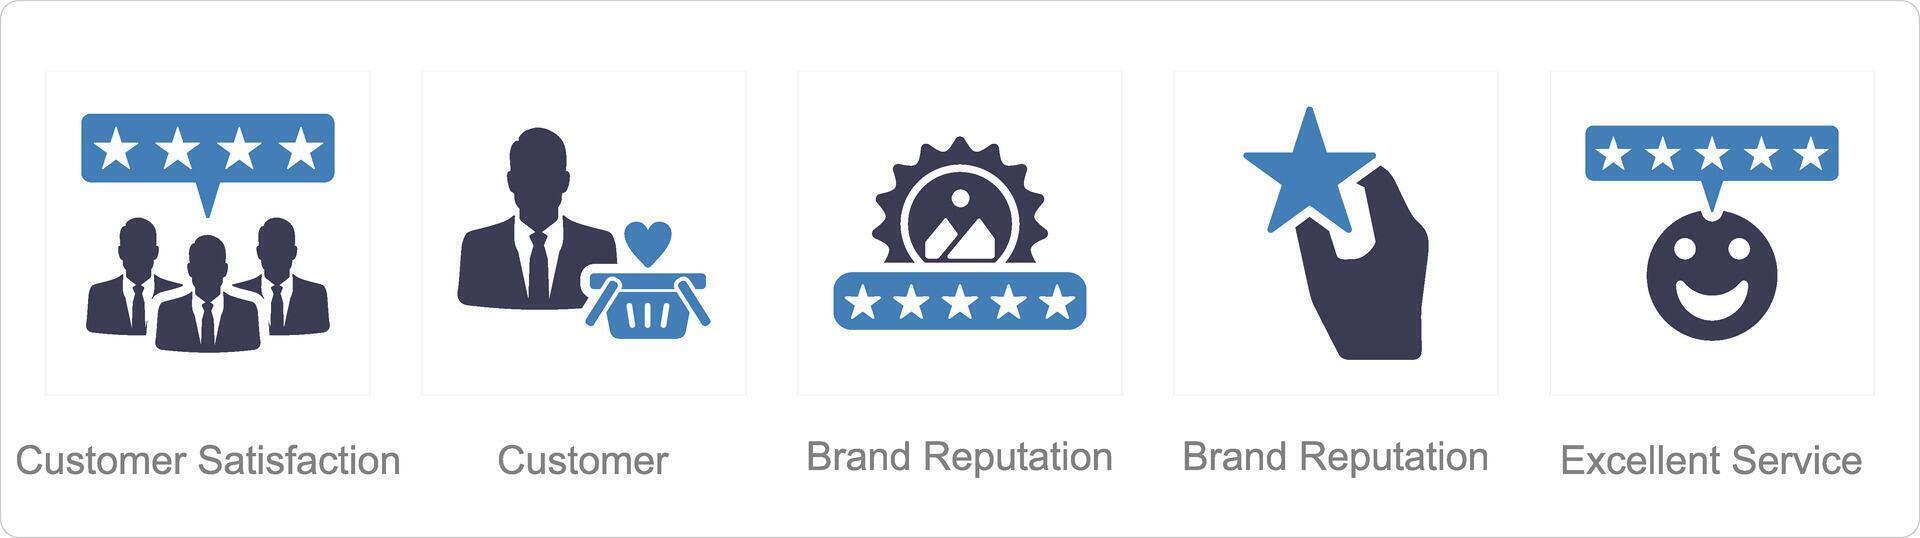 en uppsättning av 5 kund service ikoner som kund tillfredsställelse, kund, varumärke rykte vektor